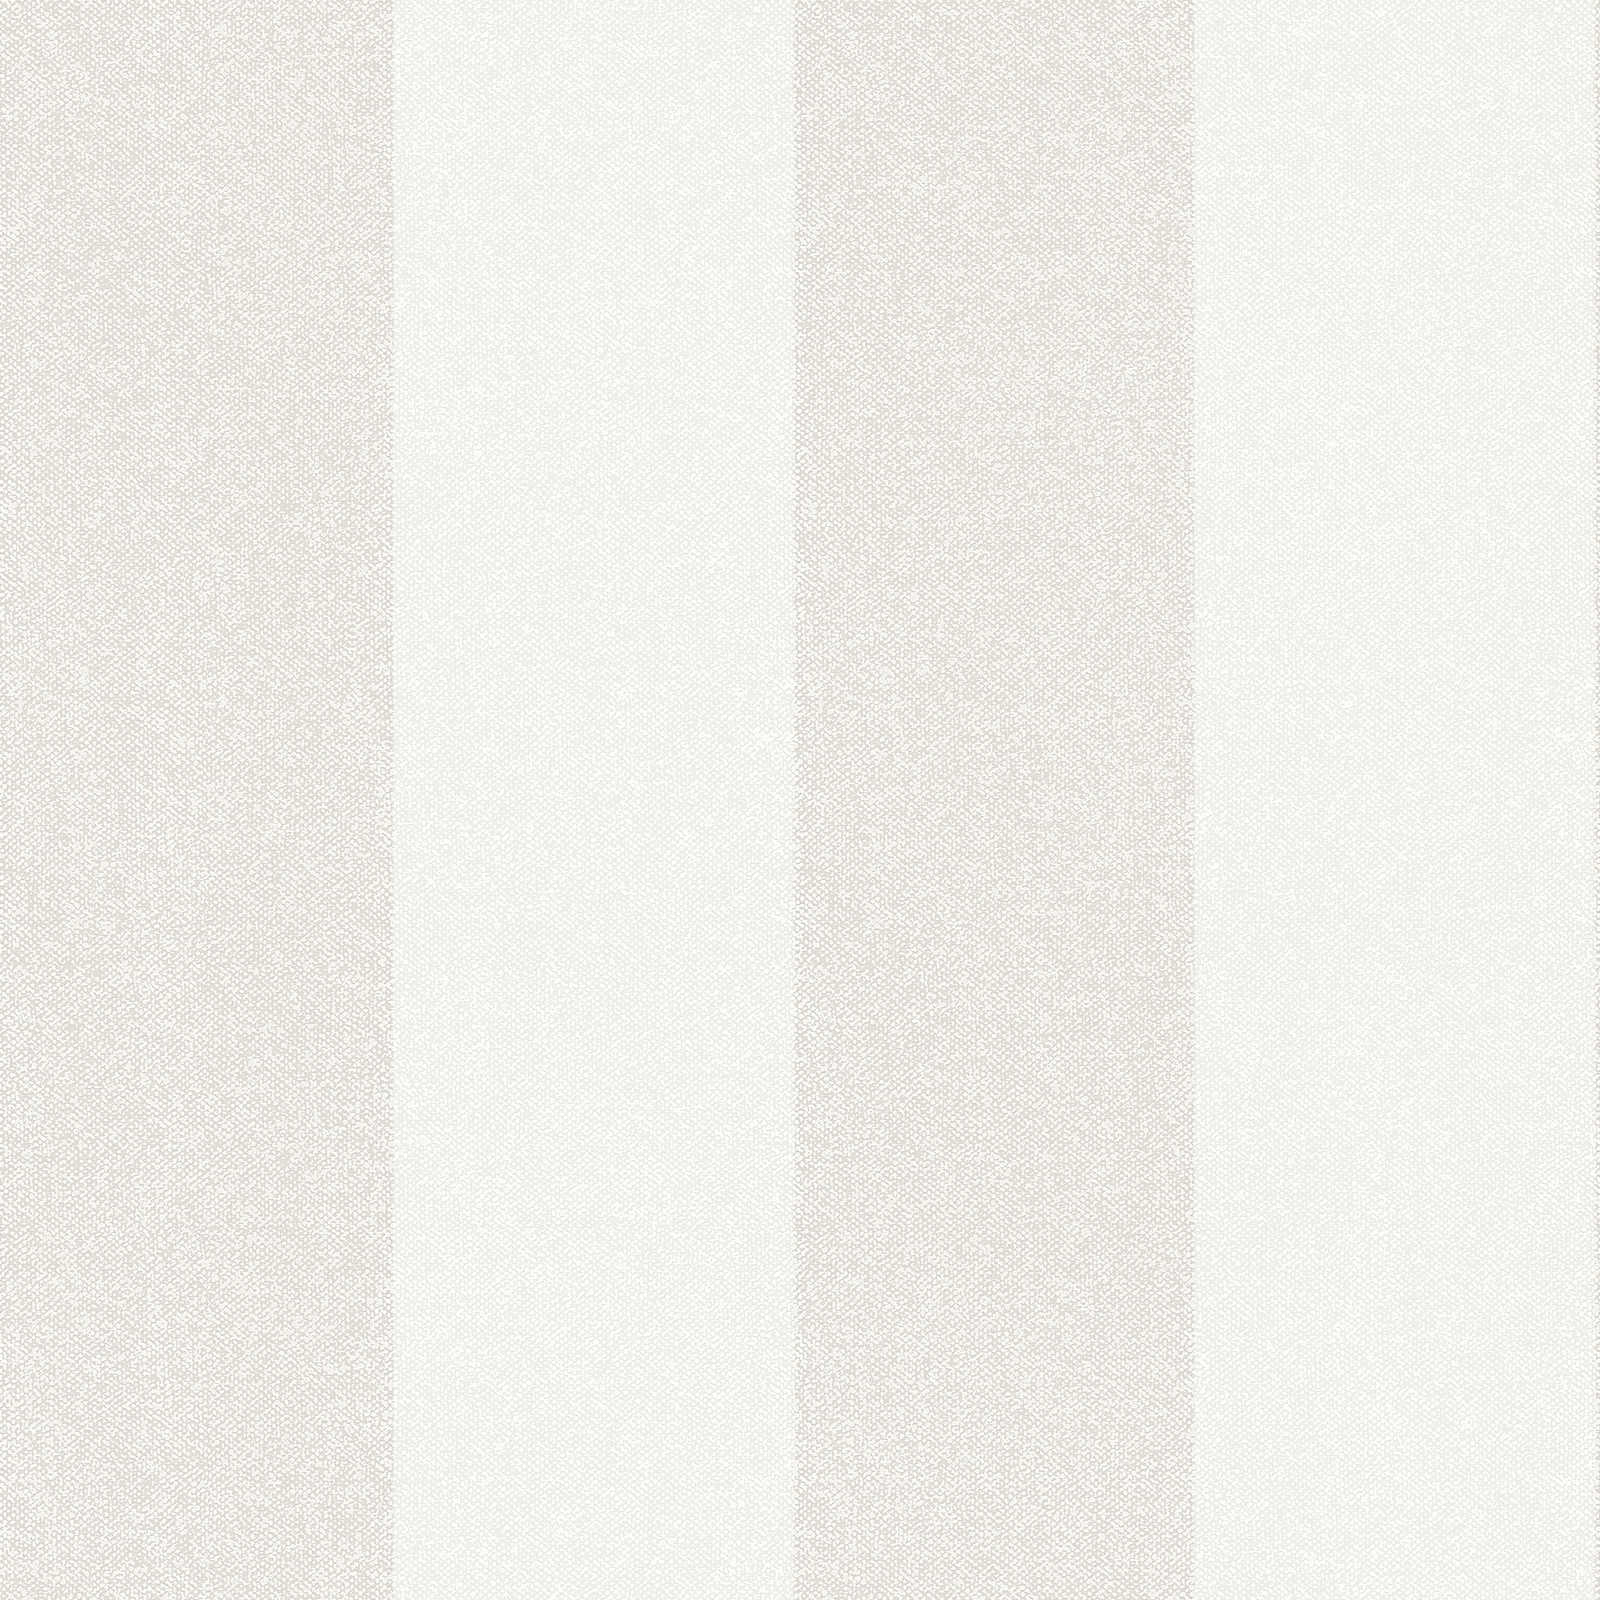 Carta da parati a righe con effetto lino - crema, grigio, beige
